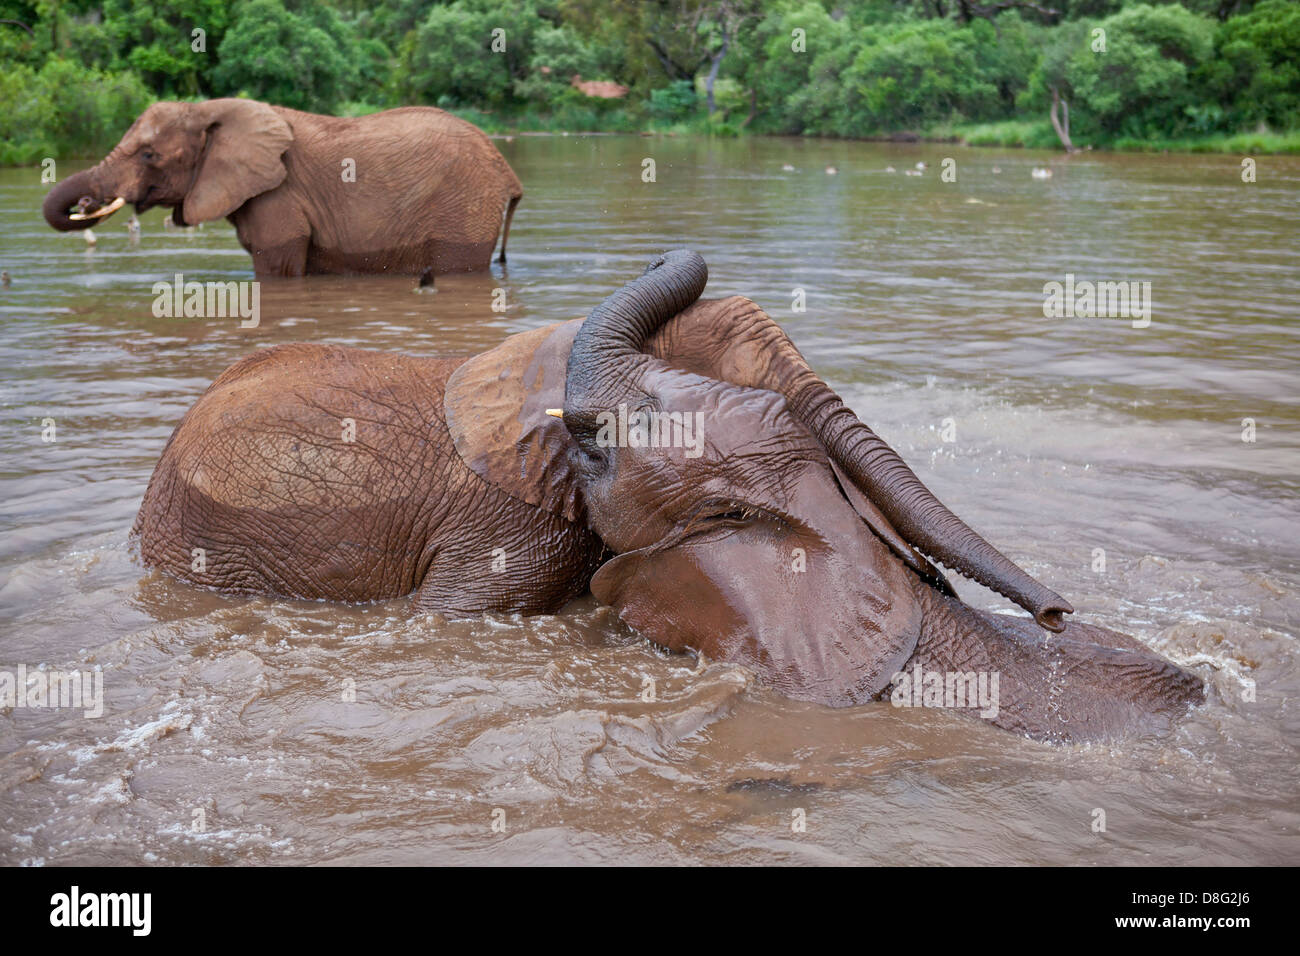 L'éléphant africain (Loxodonta africana) de jeunes veaux jouant dans l'eau.Afrique du Sud Banque D'Images